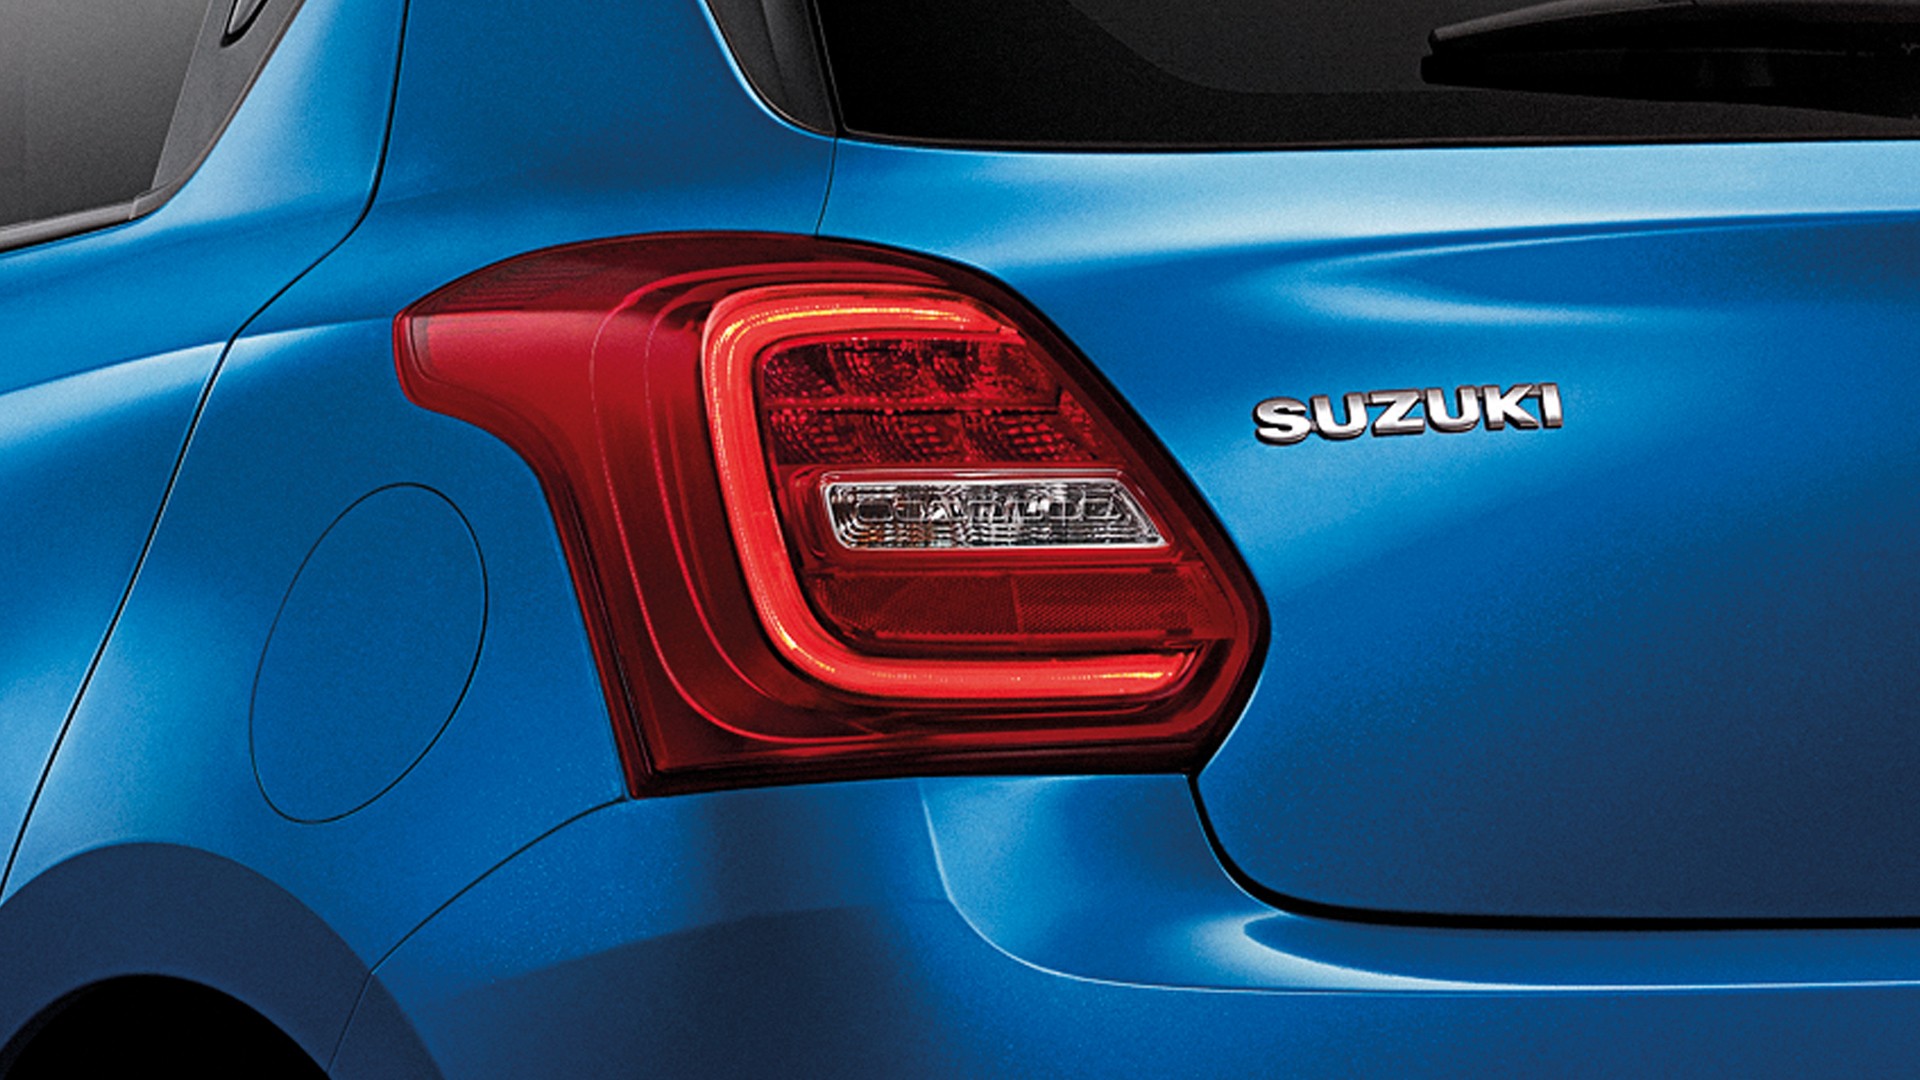 New Suzuki Swift LED Rear Combination Lamps Sporty and Unique Design.